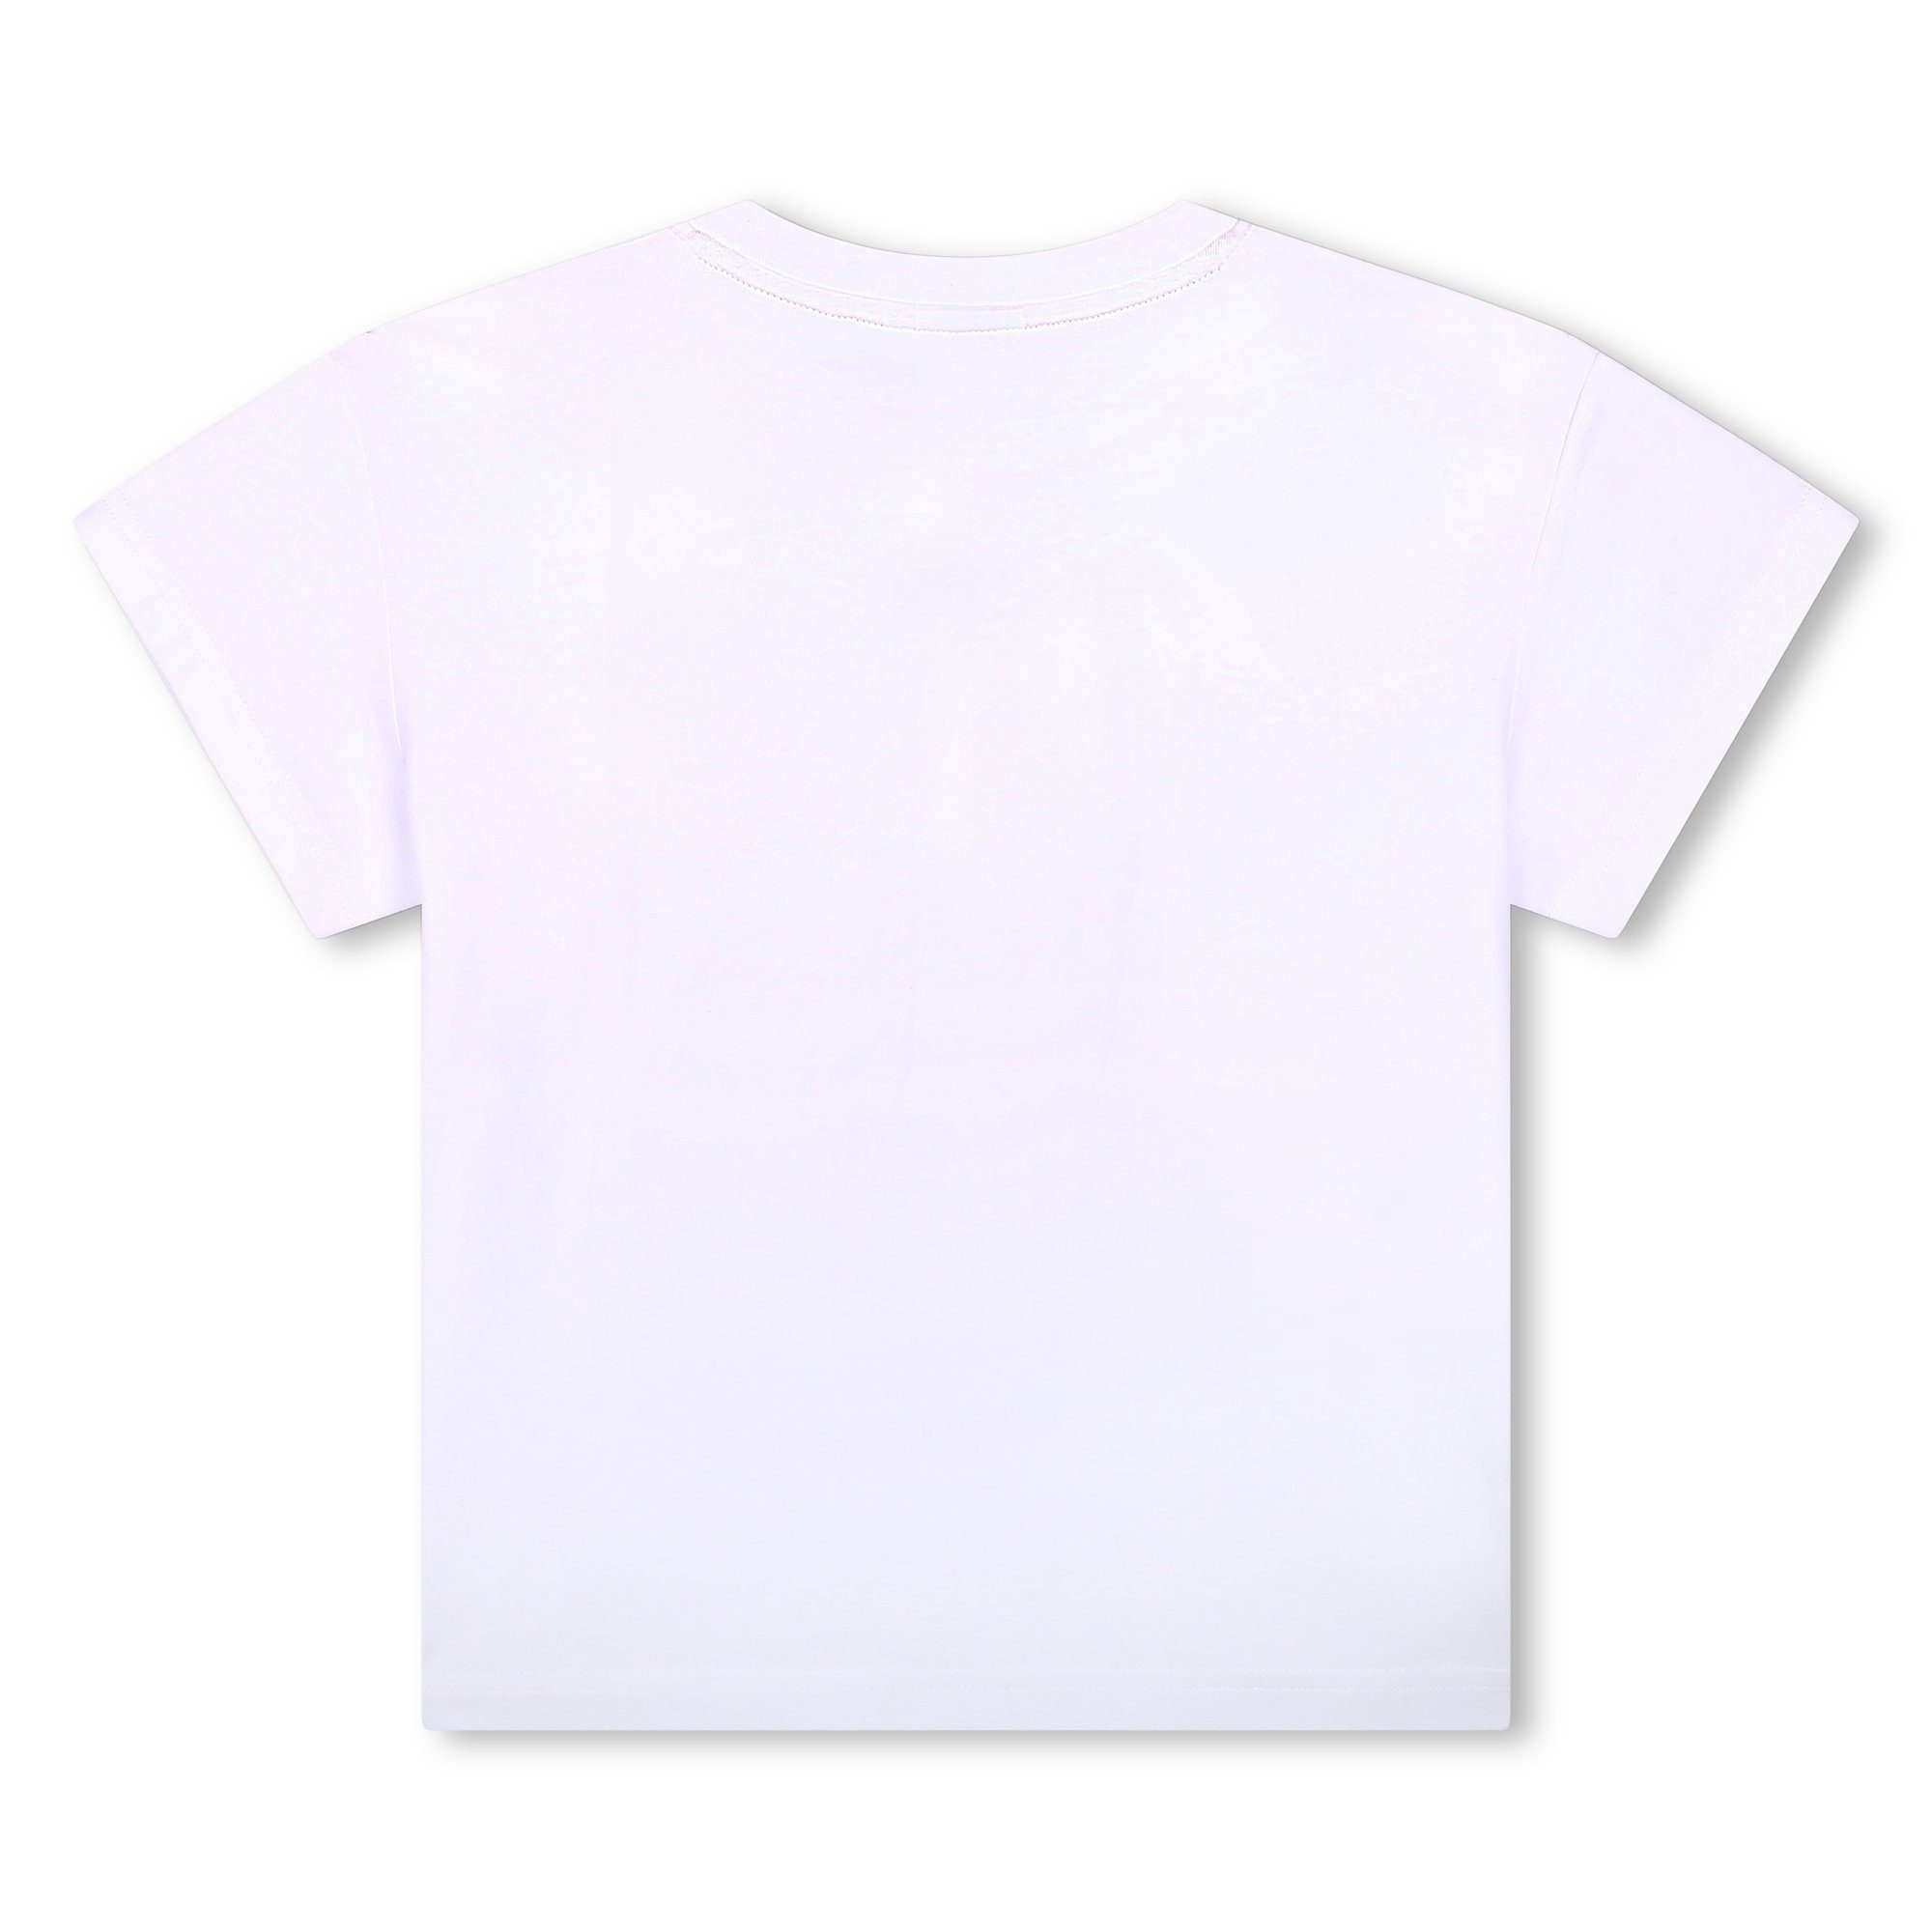 HUGO Print-Shirt HUGO Kinder kurzarm mit weiß Logo in Druck aus Biobaumwolle T-Shirt